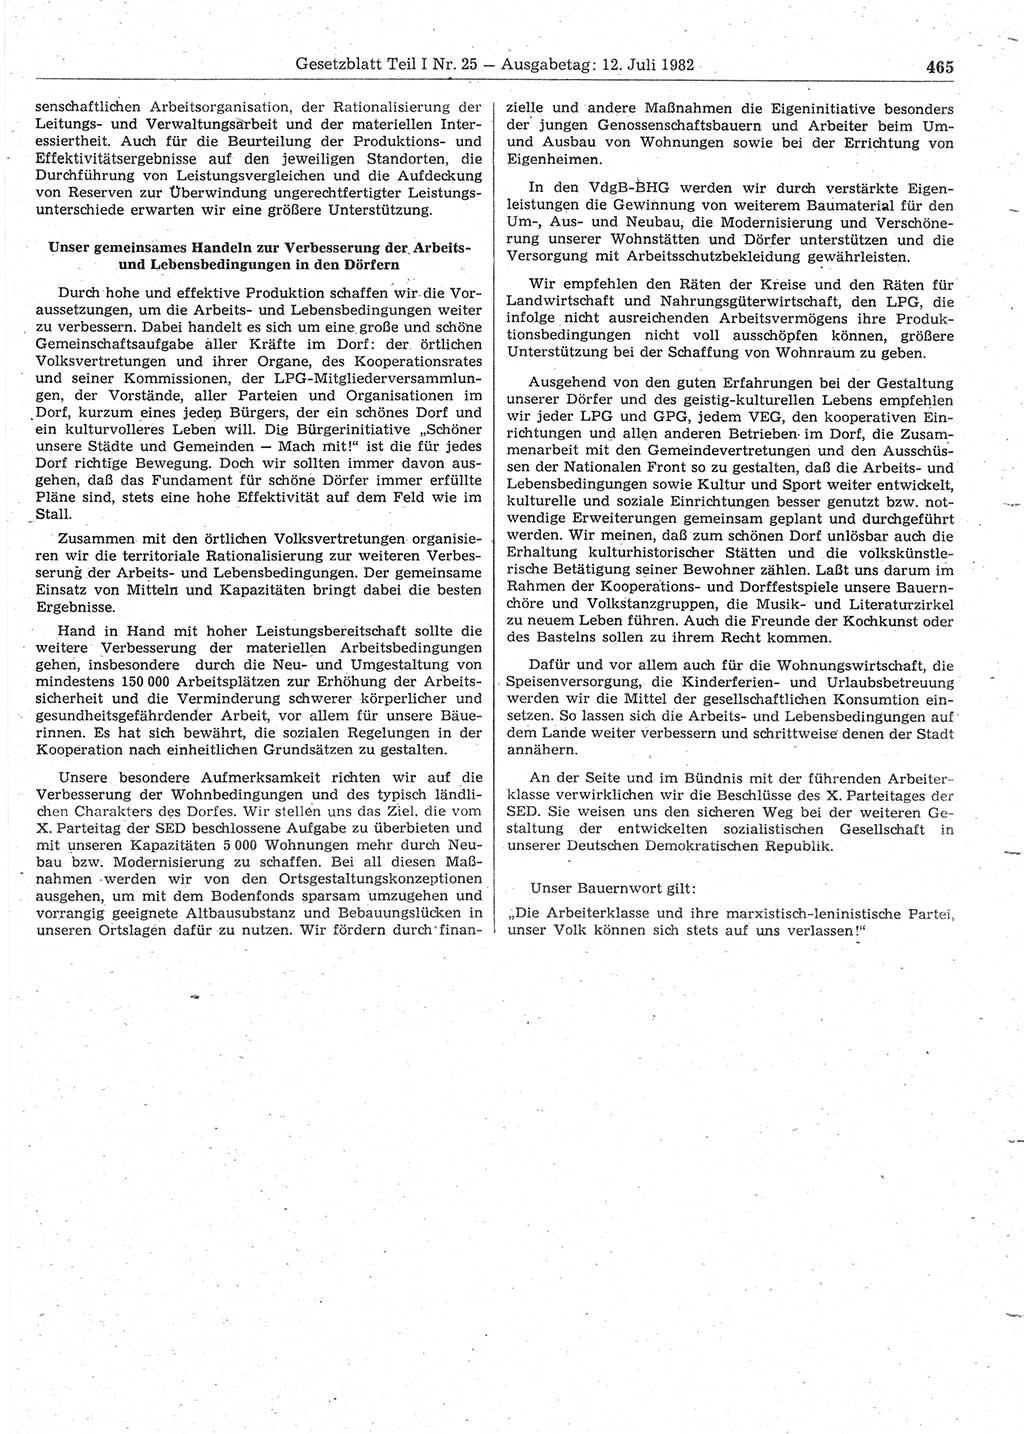 Gesetzblatt (GBl.) der Deutschen Demokratischen Republik (DDR) Teil Ⅰ 1982, Seite 465 (GBl. DDR Ⅰ 1982, S. 465)